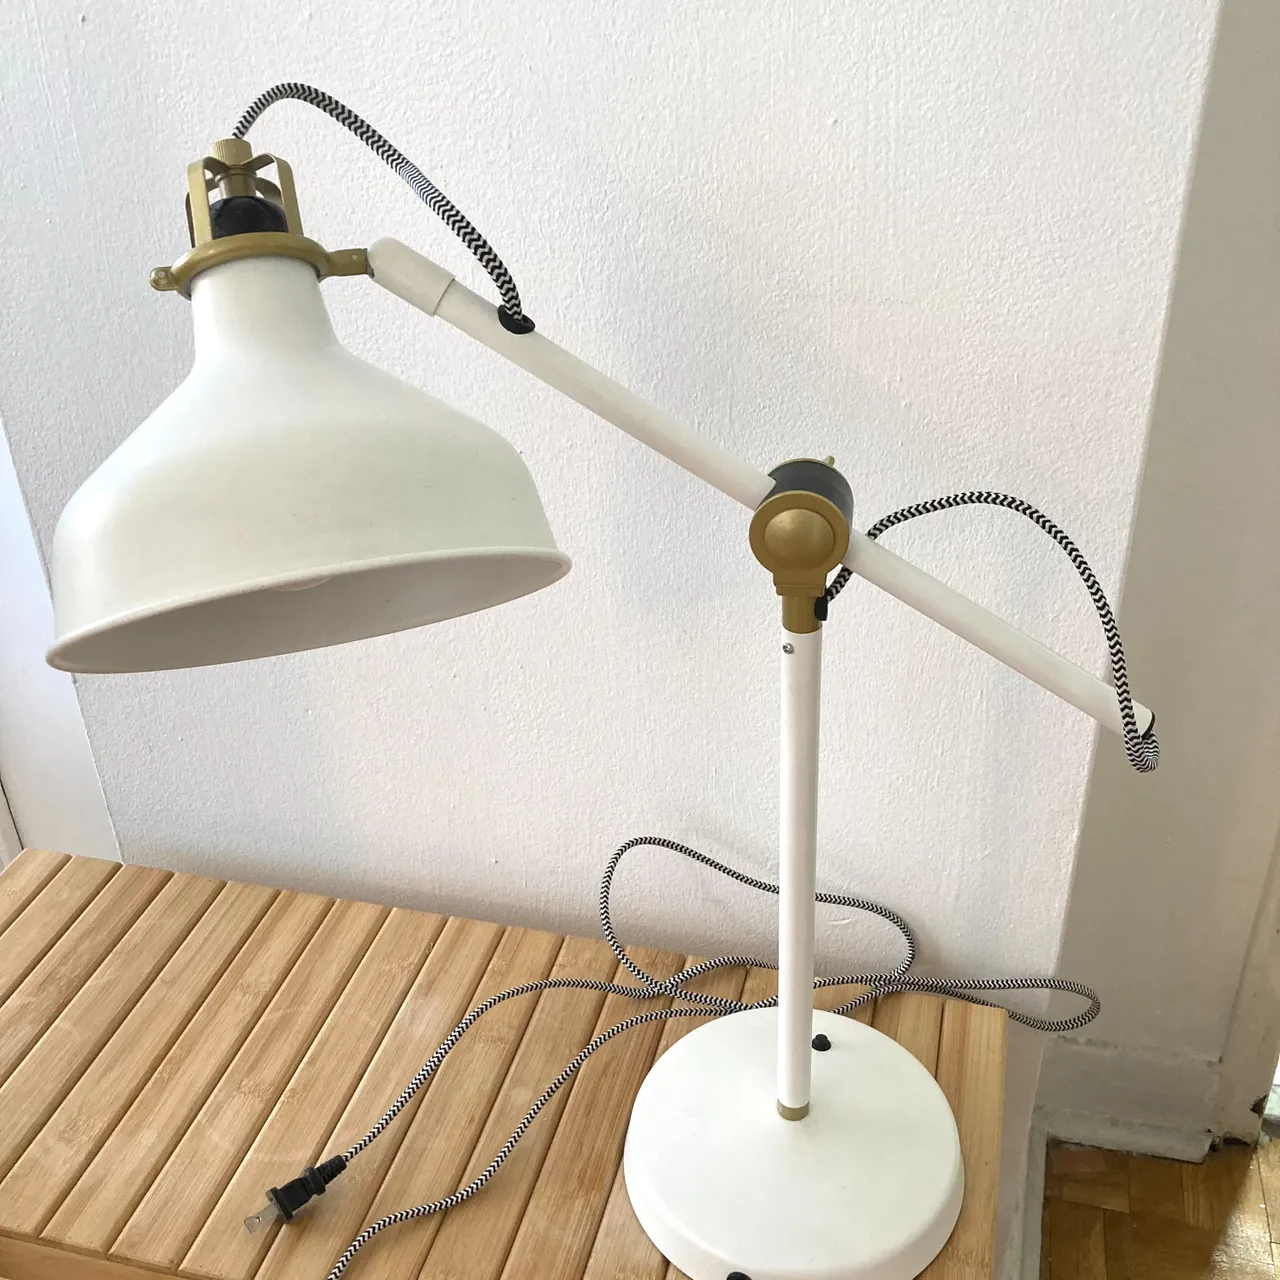 Ikea RANARP table lamp photo 1